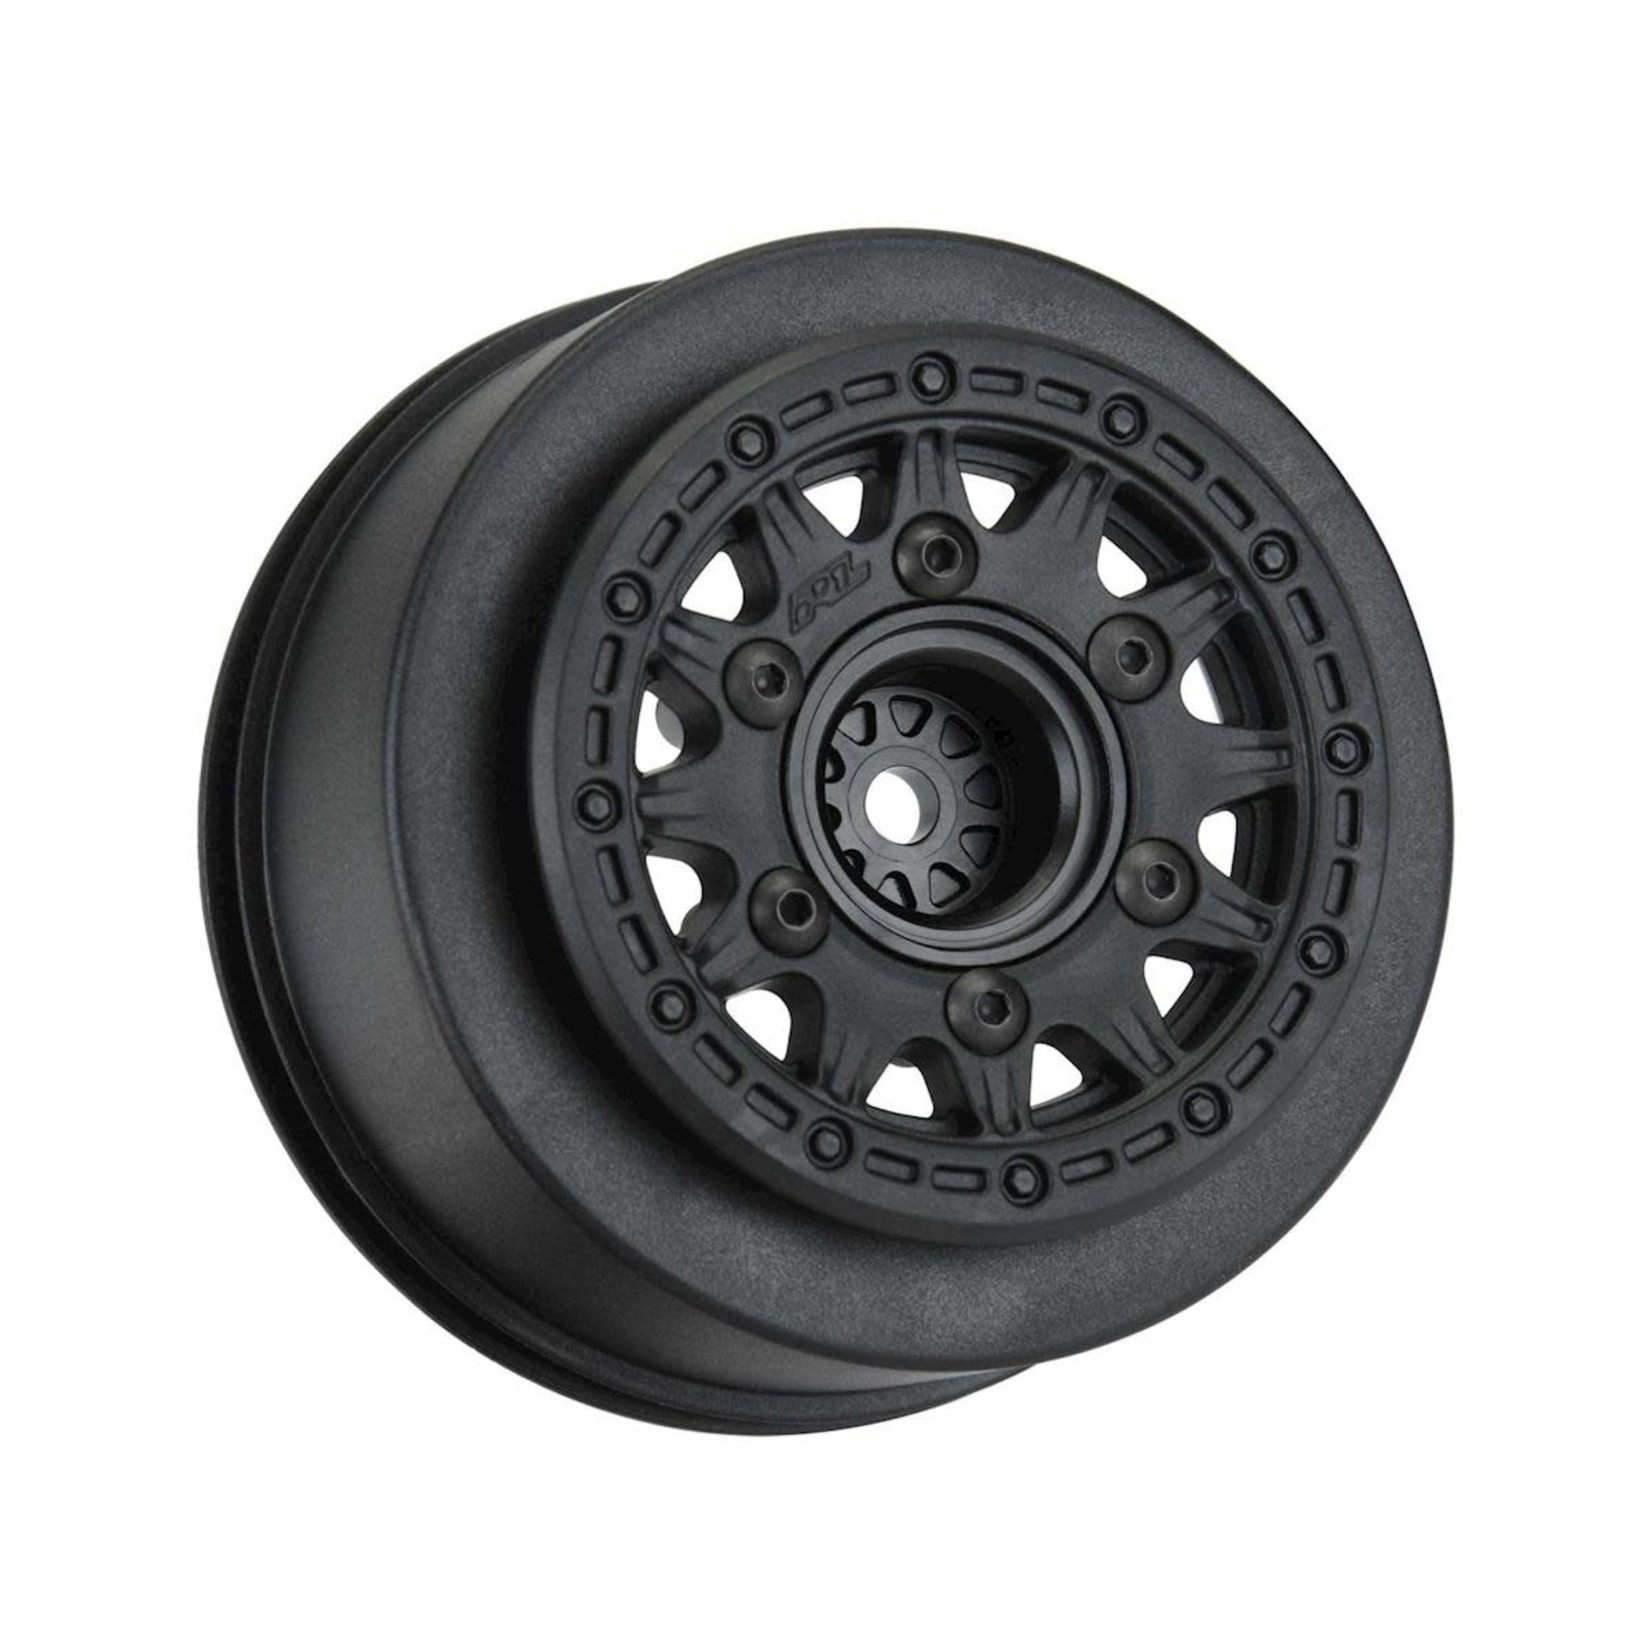 Pro-Line Pro-Line Raid Short Course Wheels (Black) (2) (Traxxas Slash) w/Removable 12mm Hex #2785-03